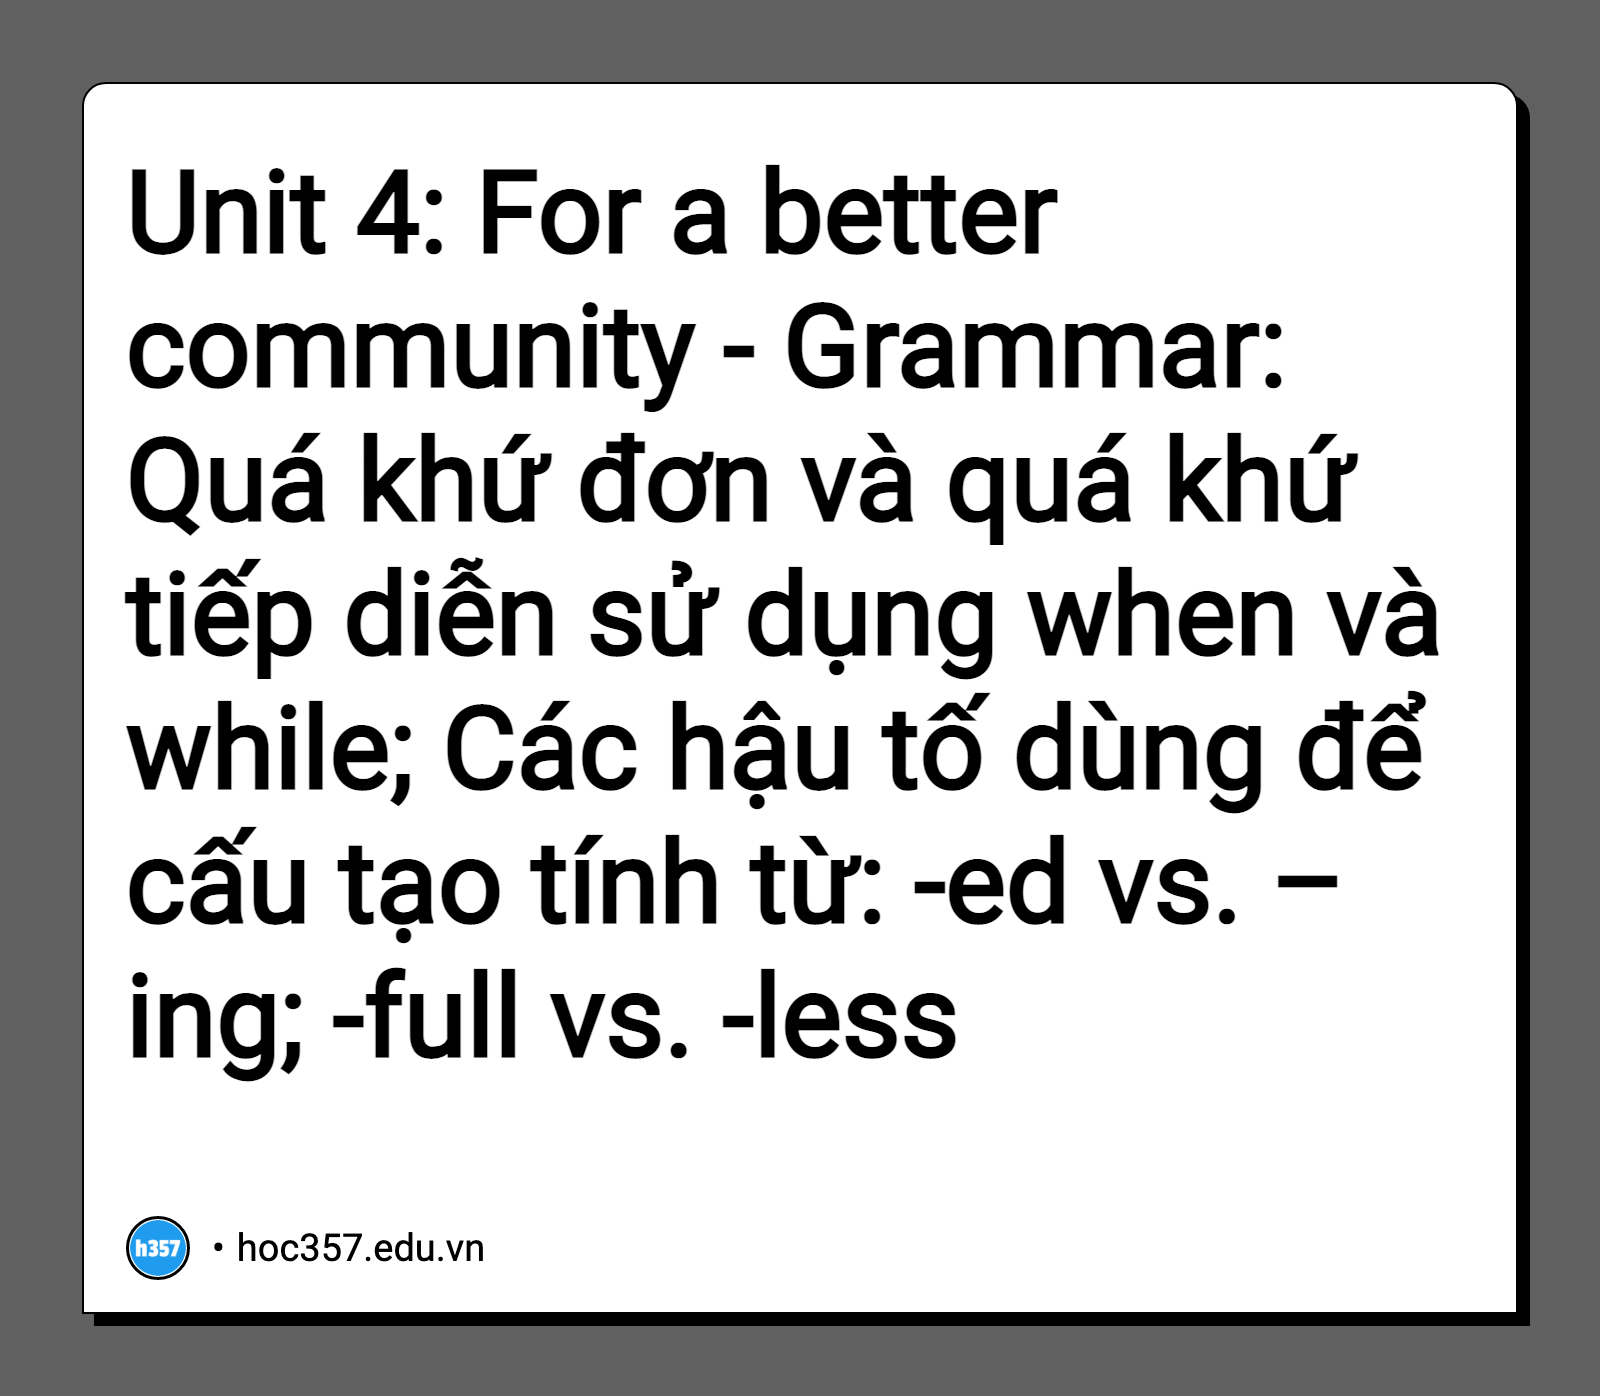 Hình minh họa Unit 4: For a better community - Grammar: Quá khứ đơn và quá khứ tiếp diễn sử dụng when và while; Các hậu tố dùng để cấu tạo tính từ: -ed vs. –ing; -full vs. -less